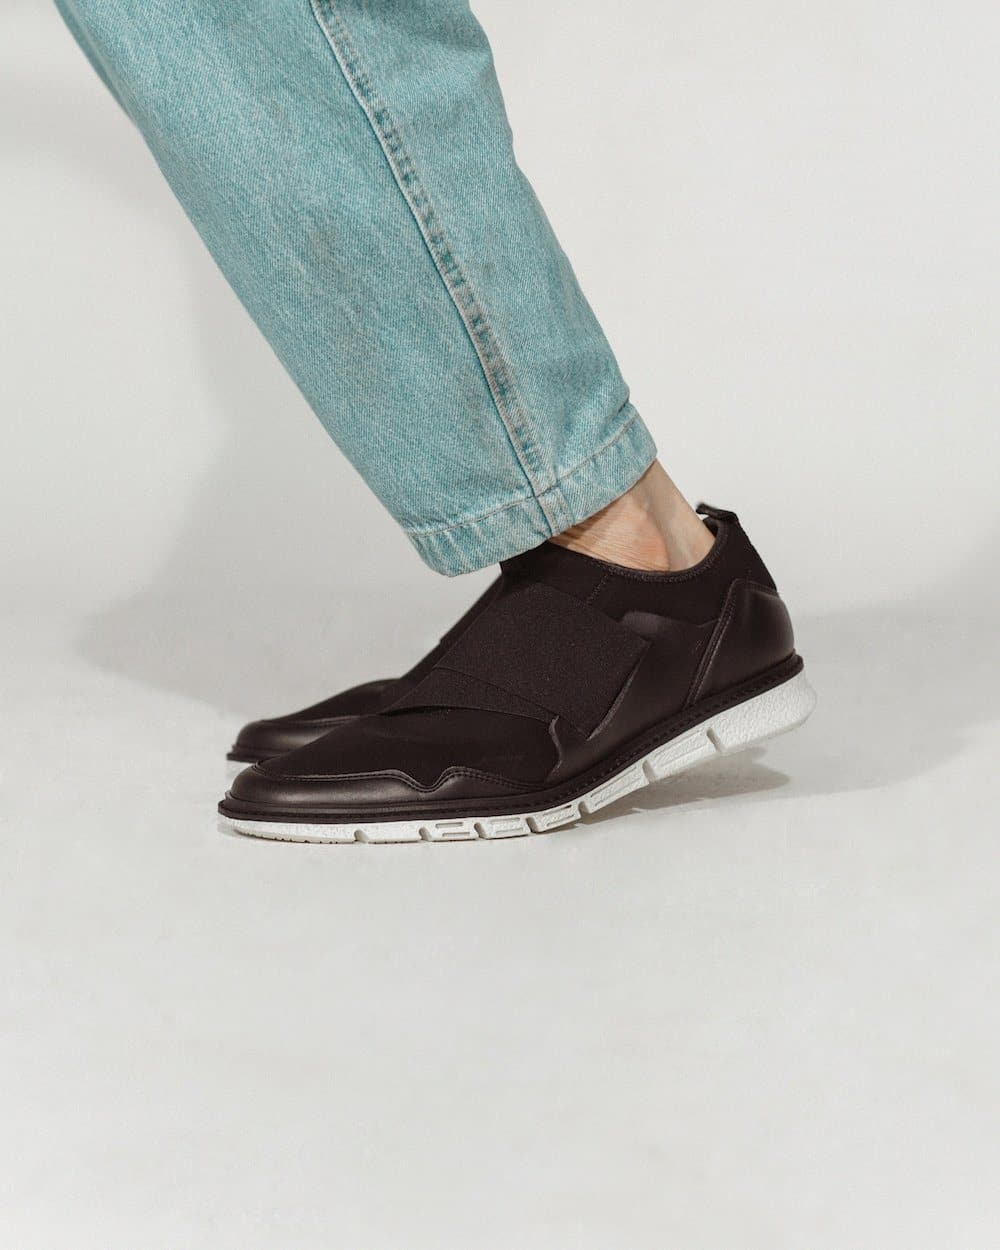 'Caspar' - men's vegan sneaker by Zette Shoes - black with white sole